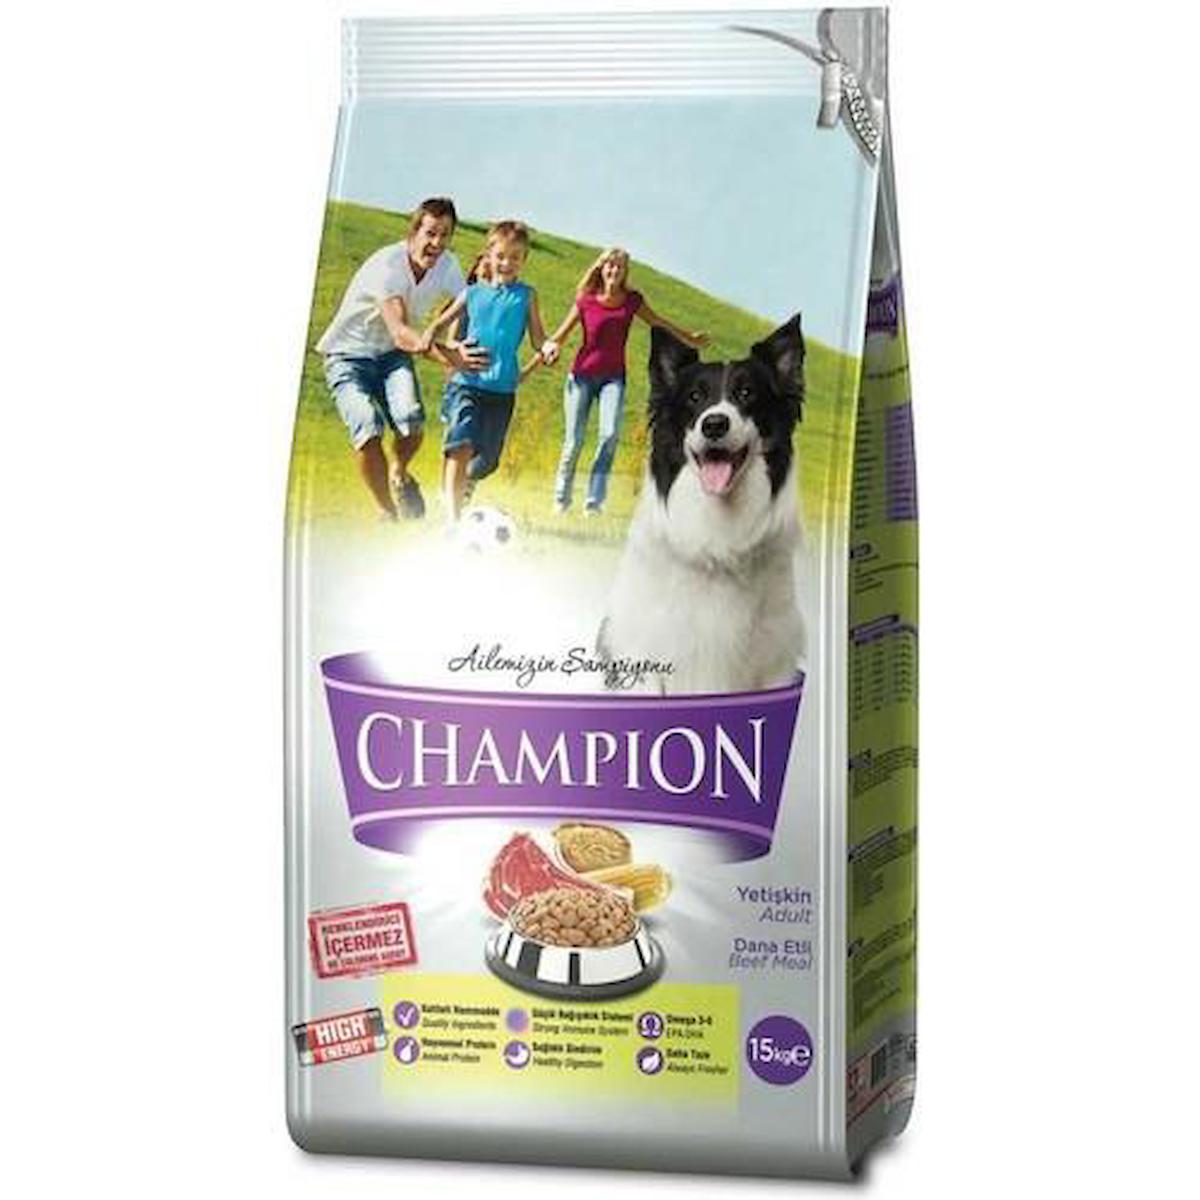 Champion High Energy Dana Etli Tüm Irklar Yetişkin Kuru Köpek Maması 15 kg